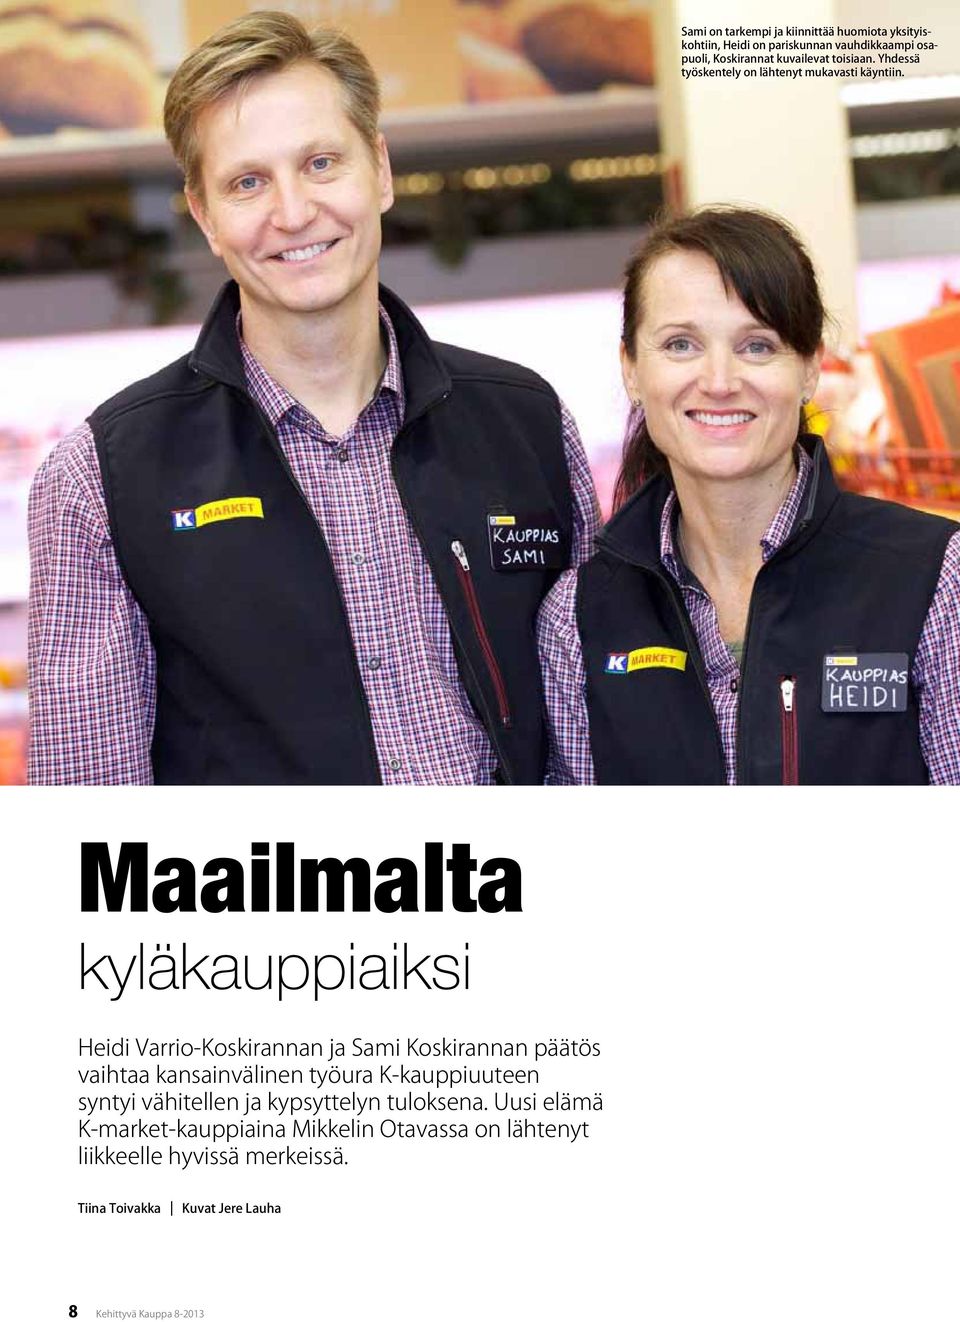 Heidi Varrio-Koskirannan ja Sami Koskirannan päätös vaihtaa kansainvälinen työura K-kauppiuuteen syntyi vähitellen ja